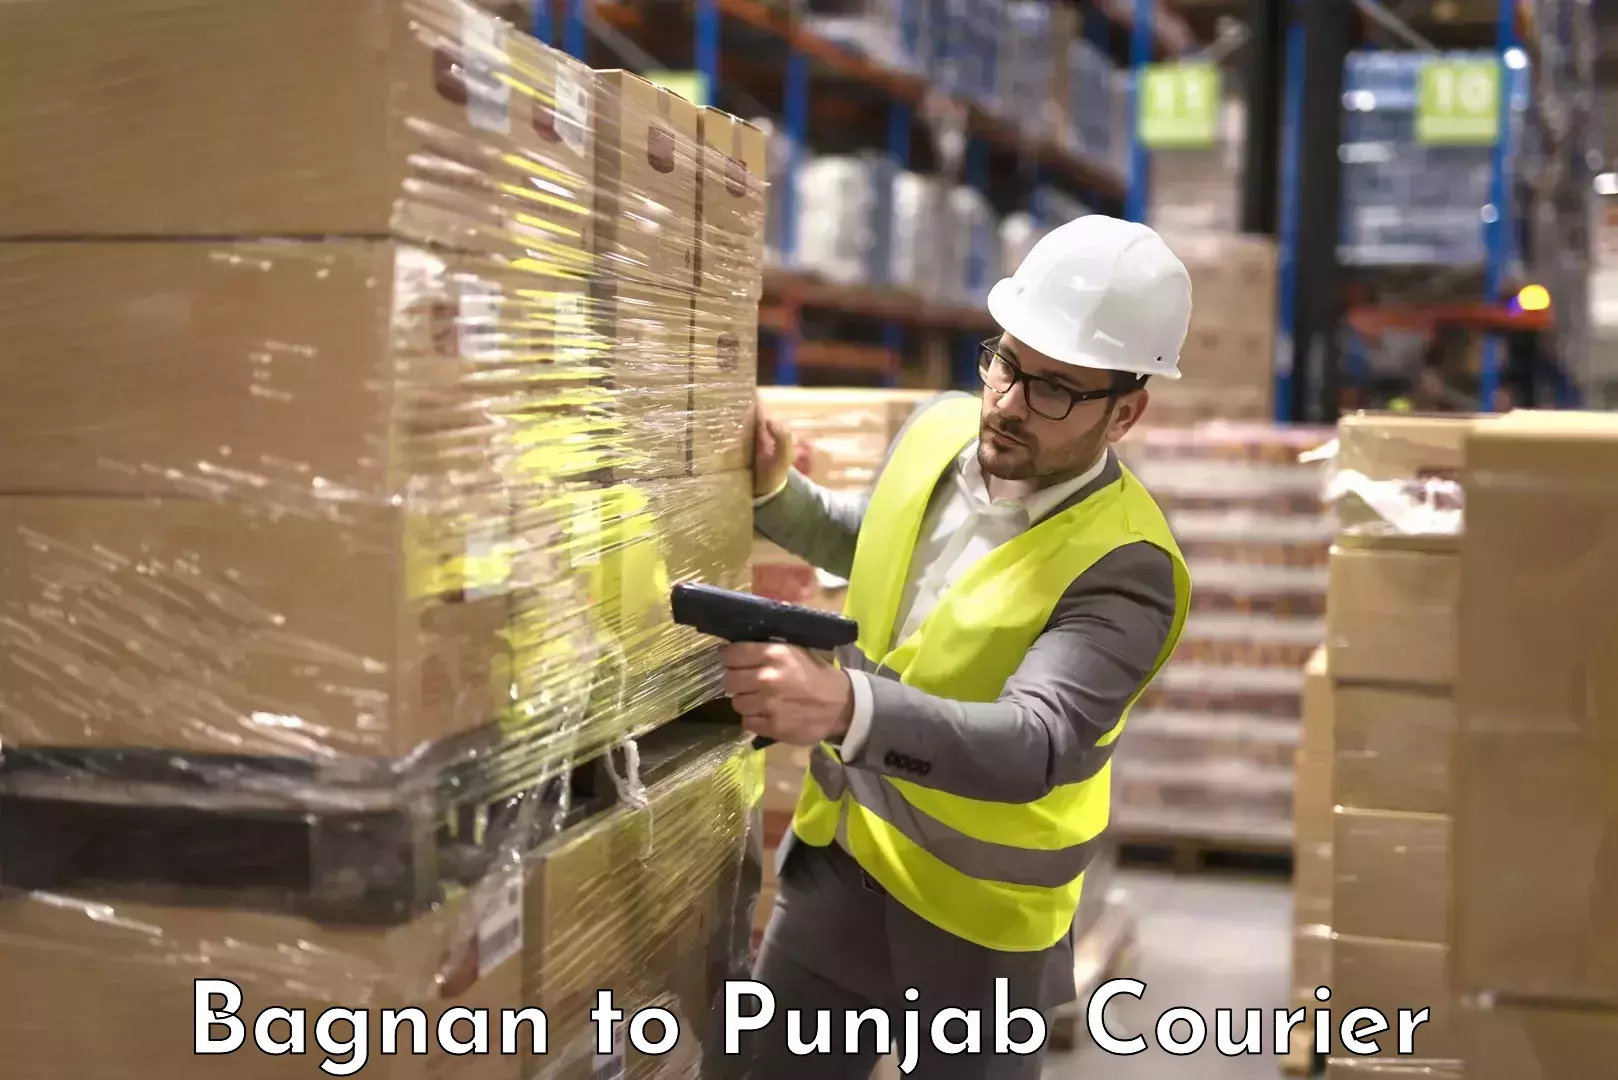 Baggage transport management Bagnan to Punjab